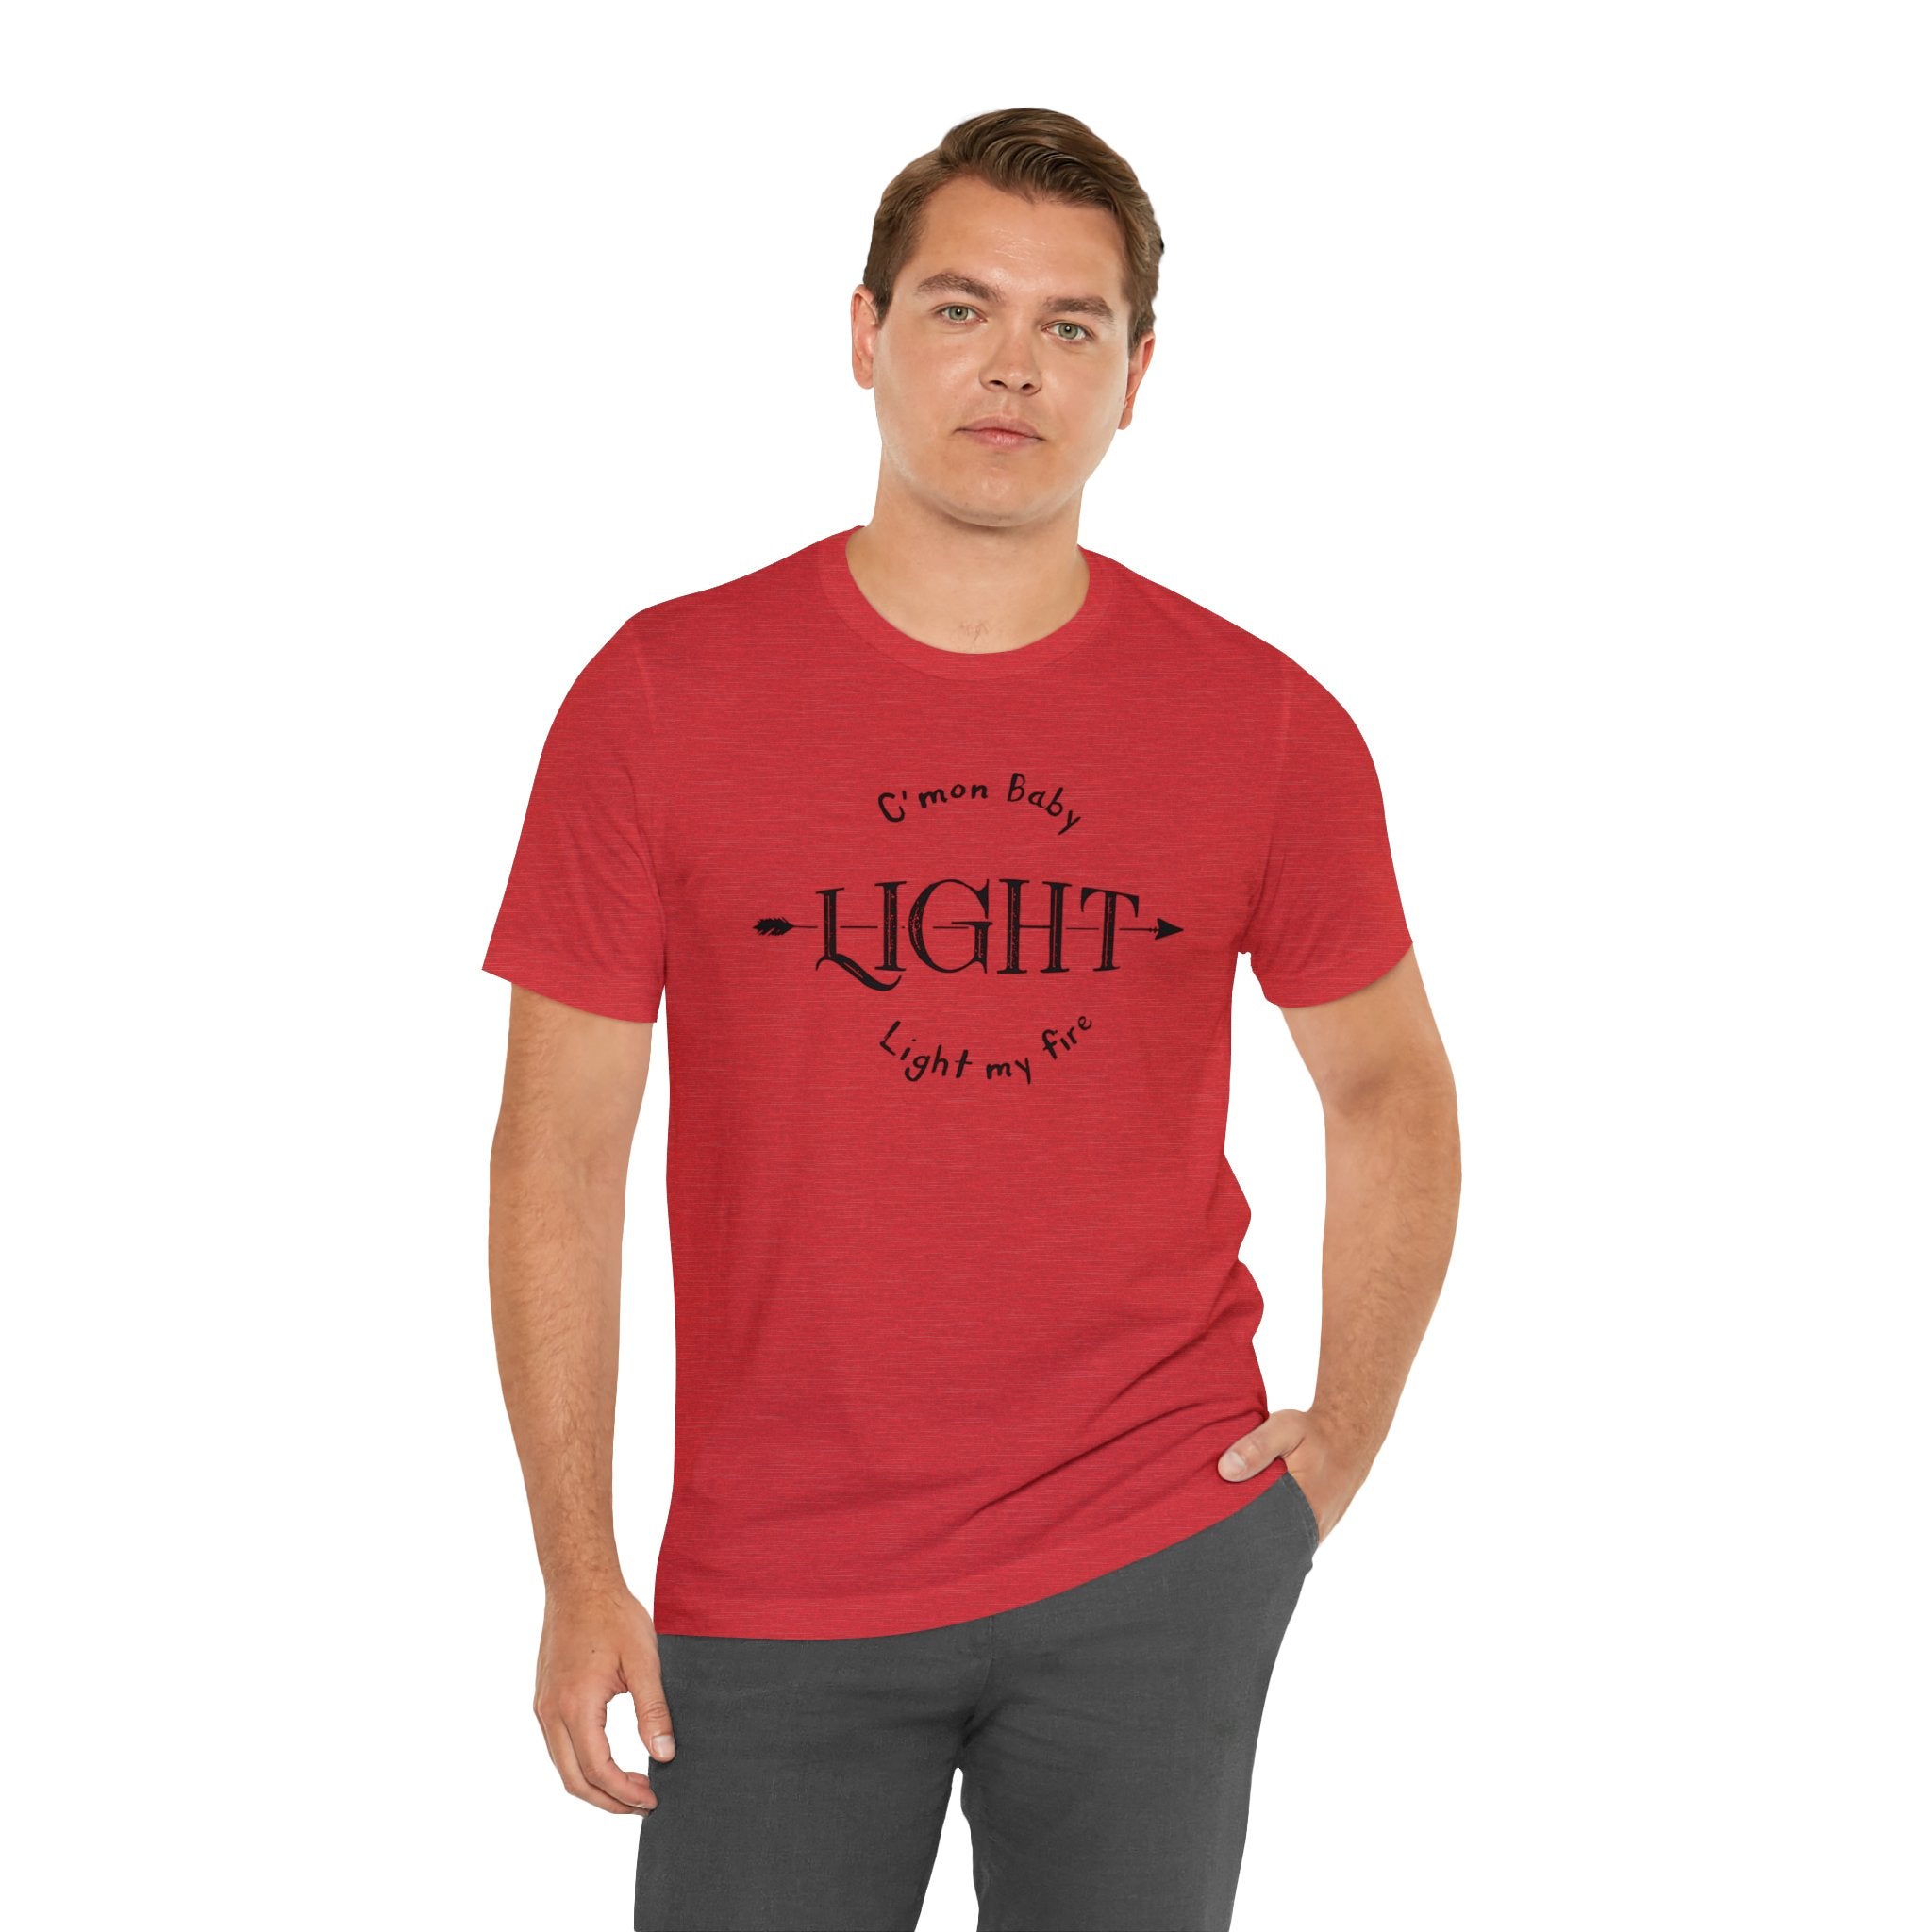 Light My Fire T-Shirt